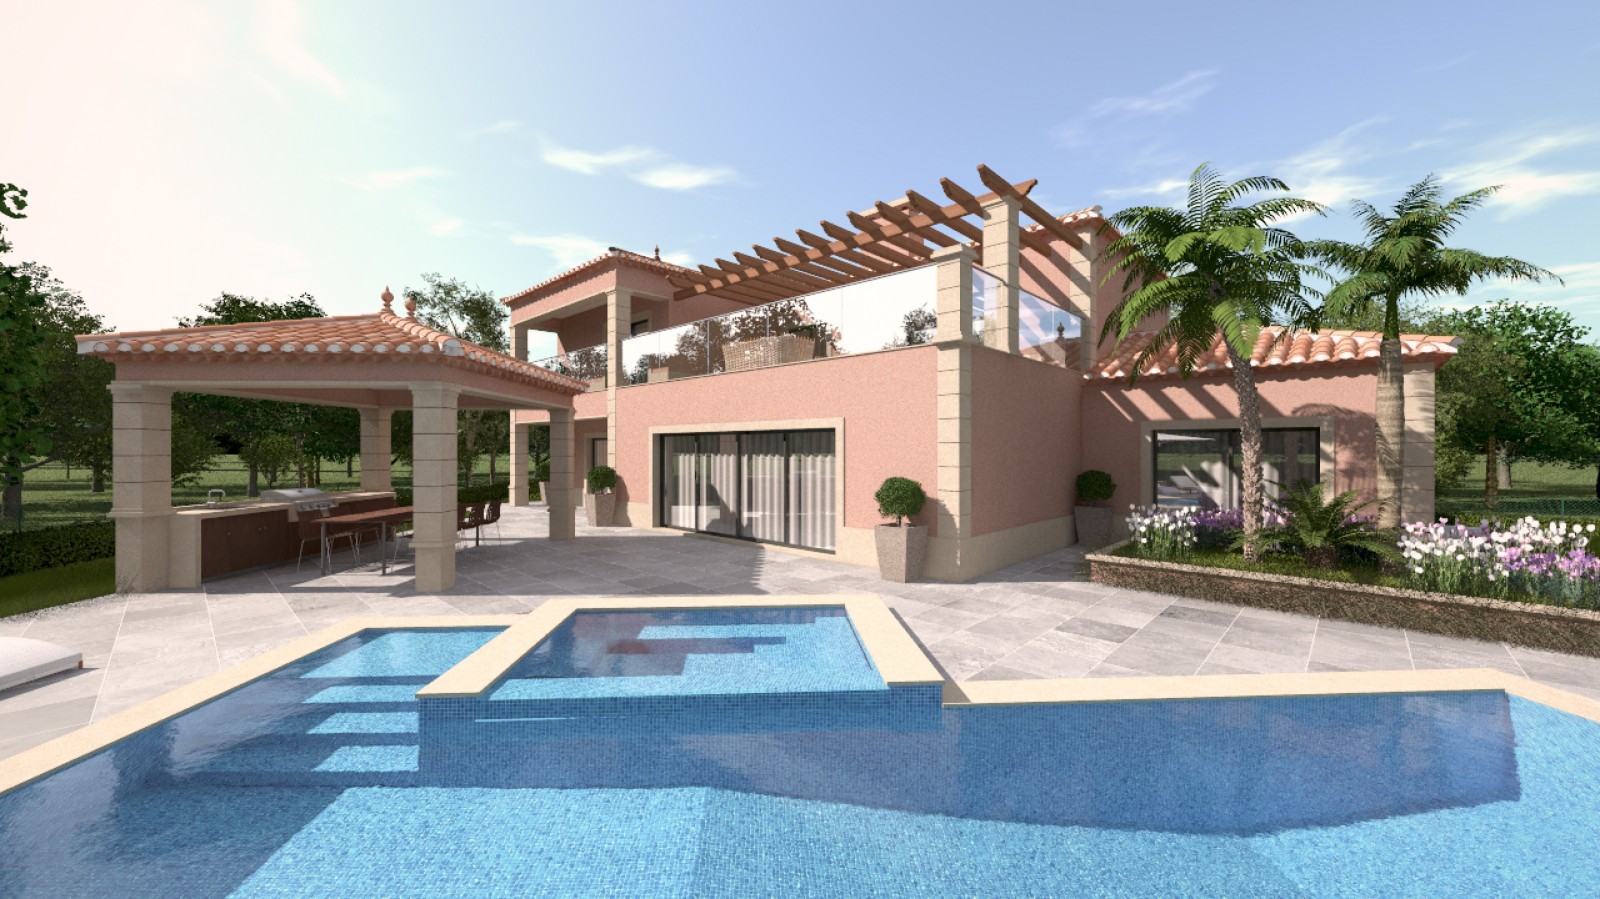 Moradia V4 com piscina, para venda em Portimão, Algarve_231712